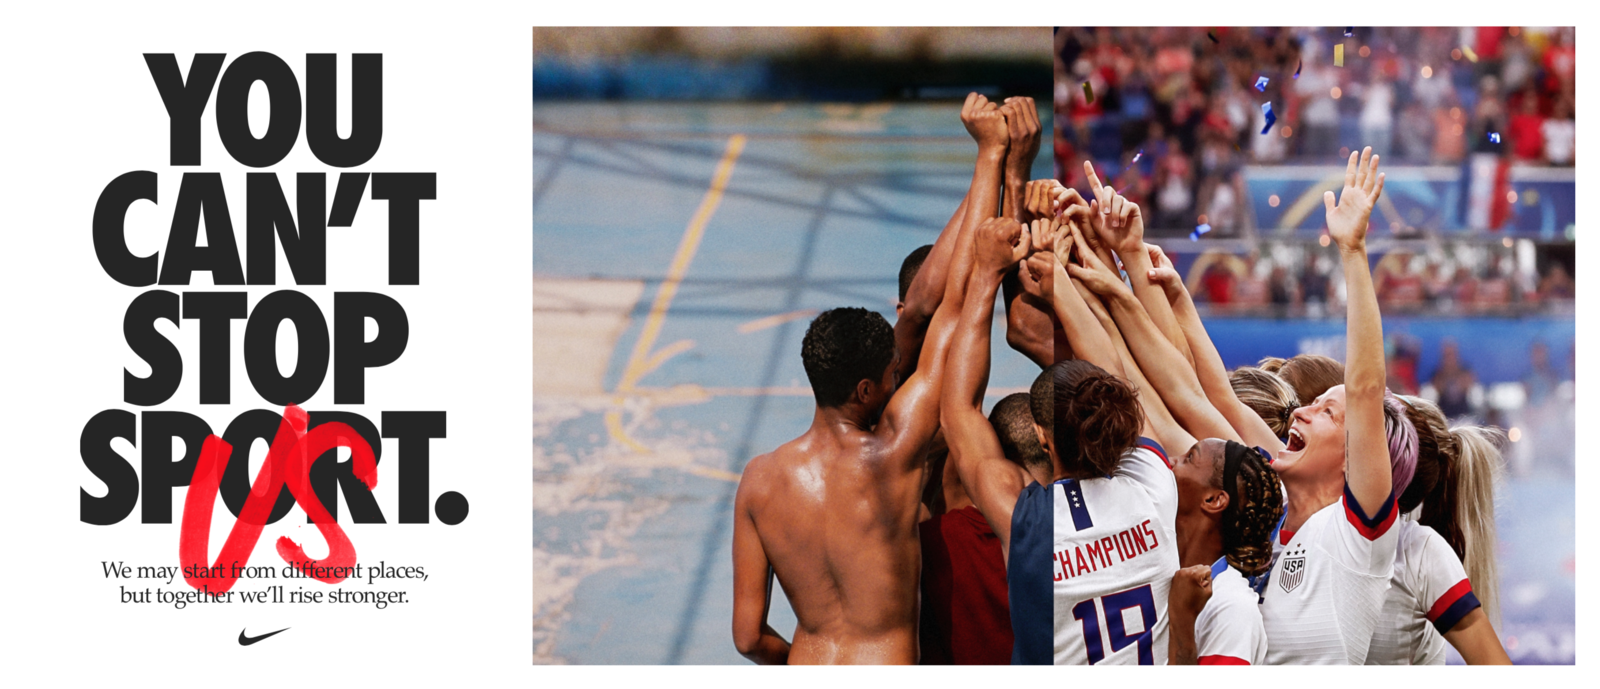 Nike dévoile sa nouvelle publicité "You can't stop us" réalisée avec un mix d'images de ses ambassadeurs - SportBuzzBusiness.fr